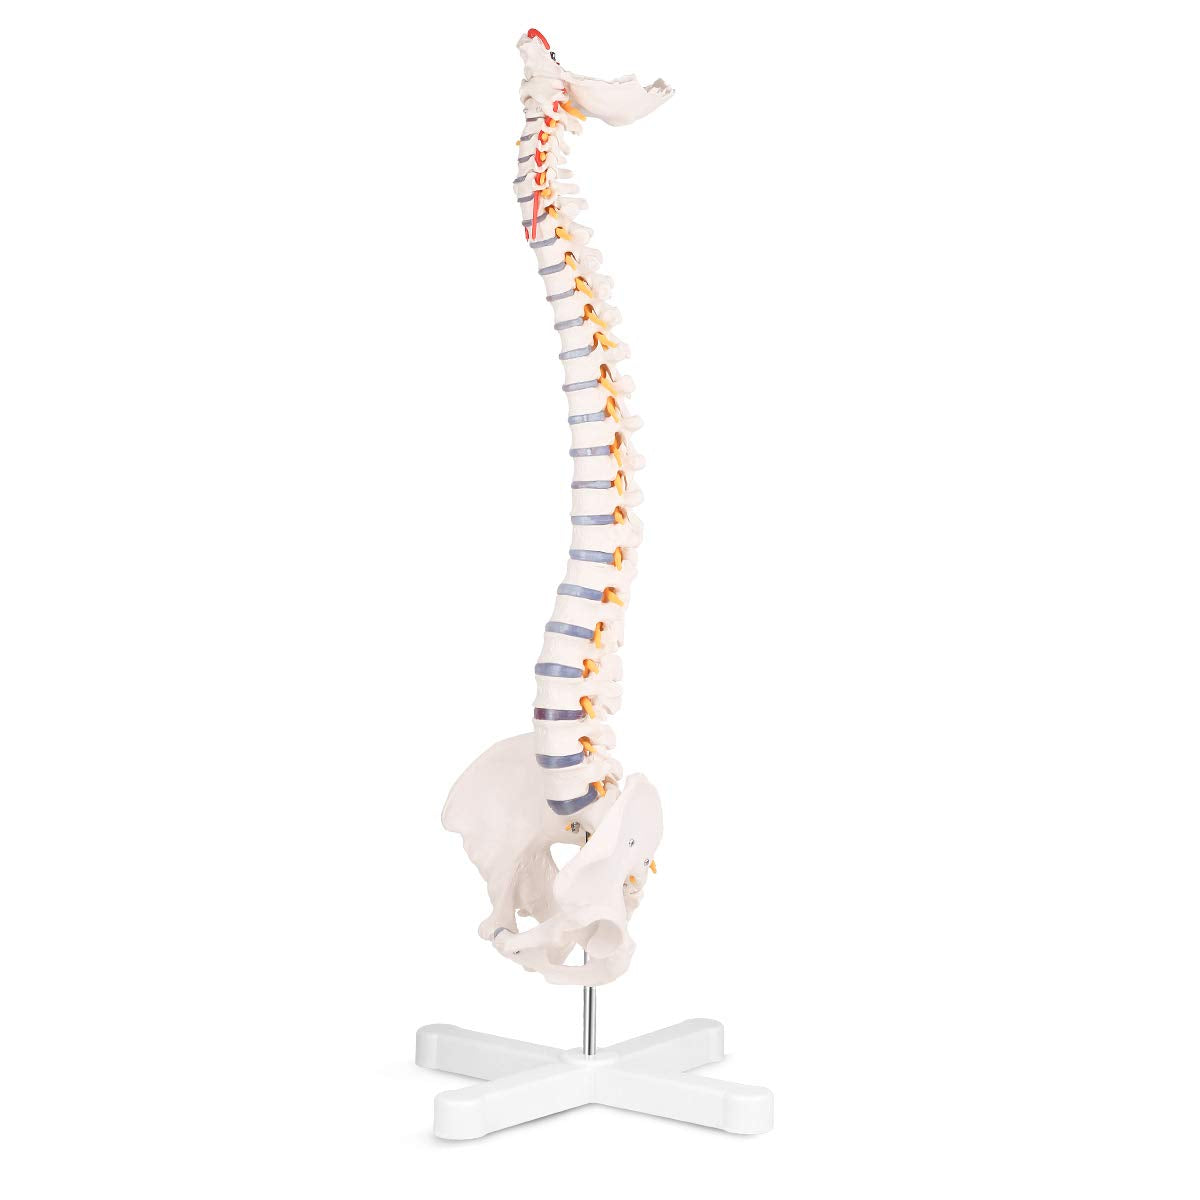 RONTEN,Human Spine Model,31"Human Spine Model,medical school,display model,demonstration model,skeleton Model,Nerves,Arteries,Lumbar Column,anatomy models,anatomical models